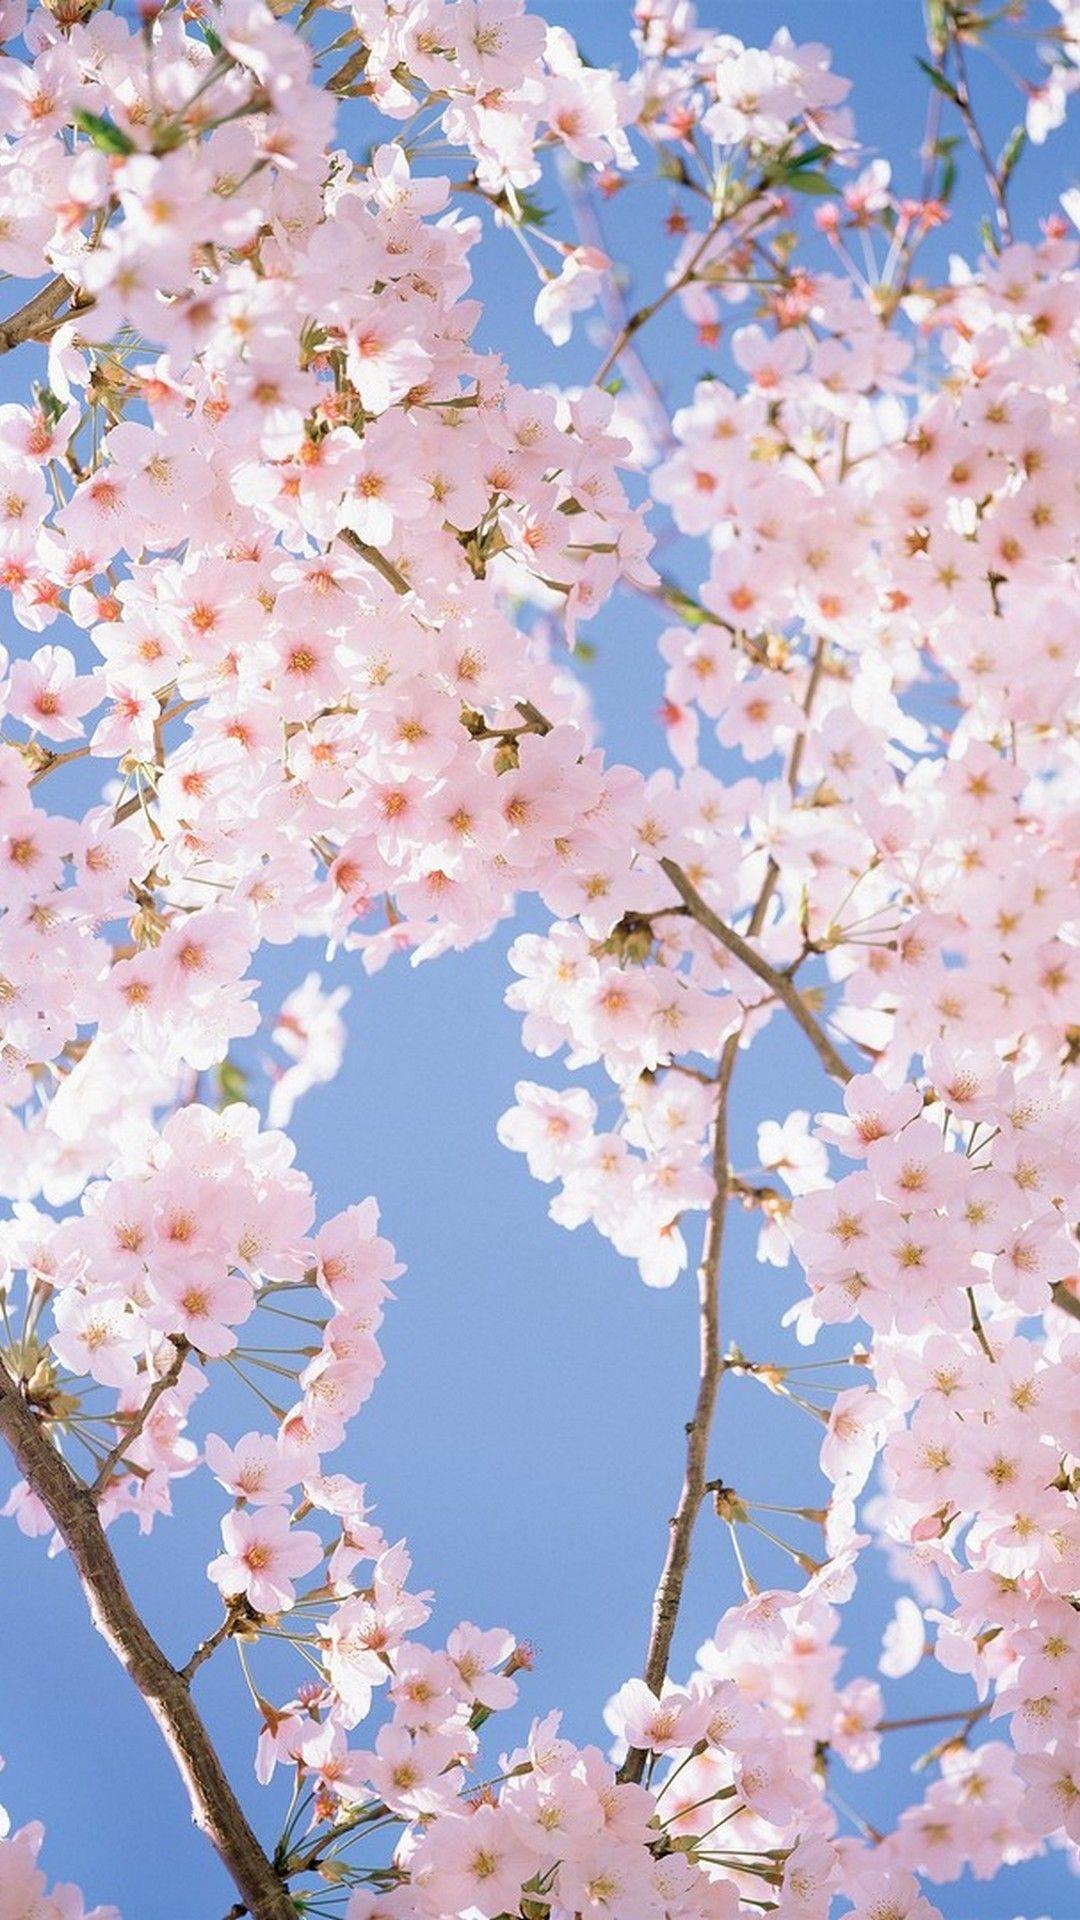 White Flower HD Wallpaper For Mobile. Best HD Wallpaper. Cherry blossom wallpaper, Spring wallpaper, Flower aesthetic